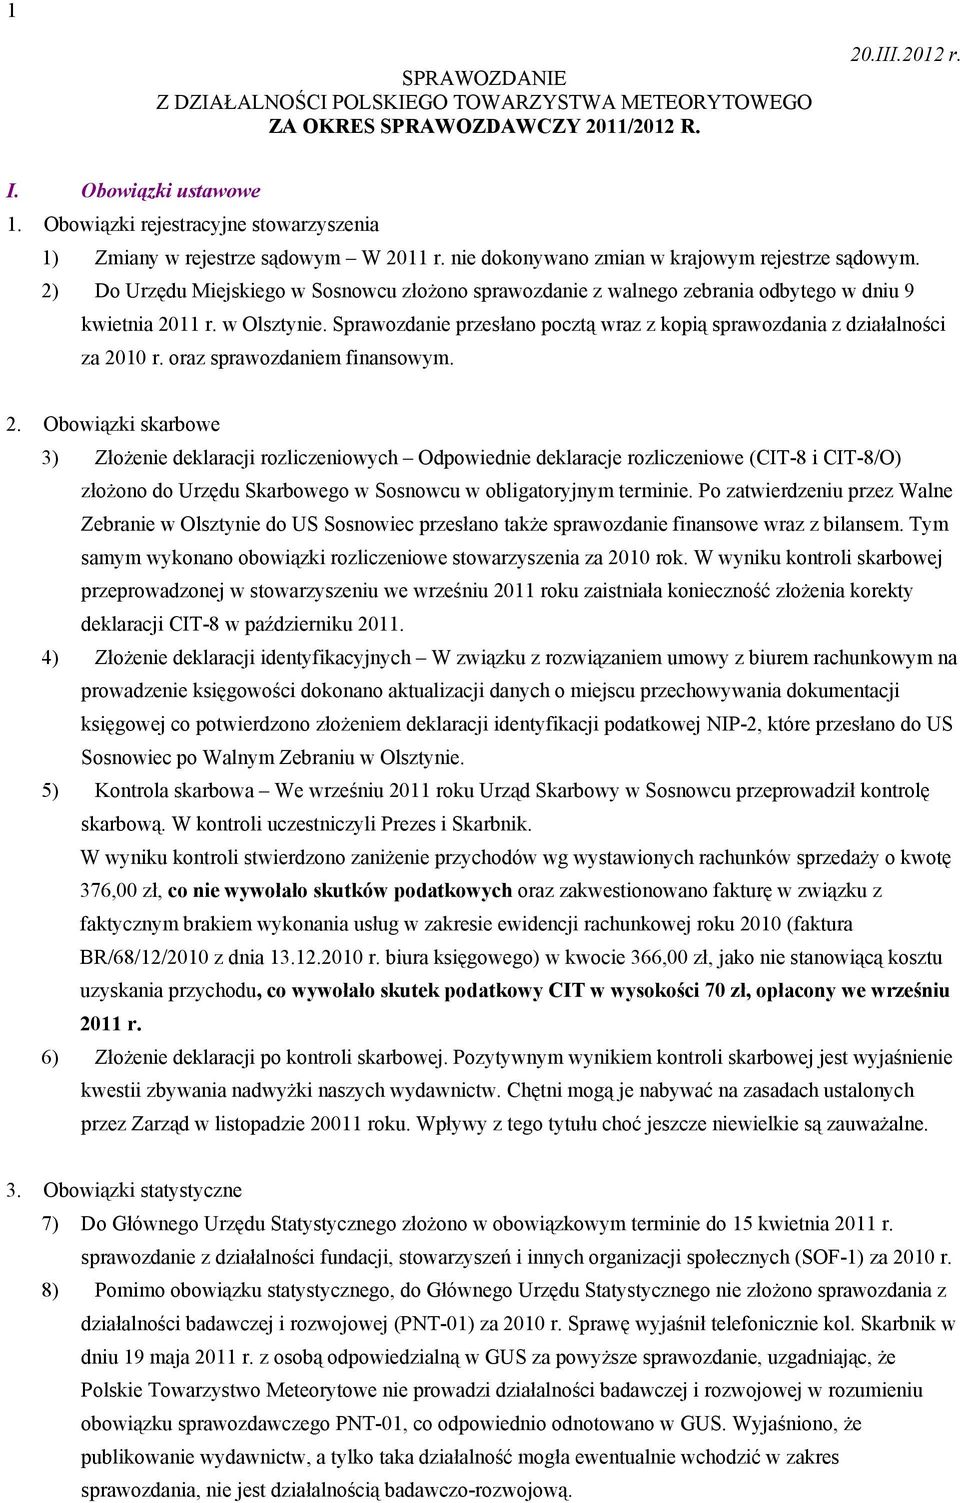 2) Do Urzędu Miejskiego w Sosnowcu złożono sprawozdanie z walnego zebrania odbytego w dniu 9 kwietnia 2011 r. w Olsztynie.